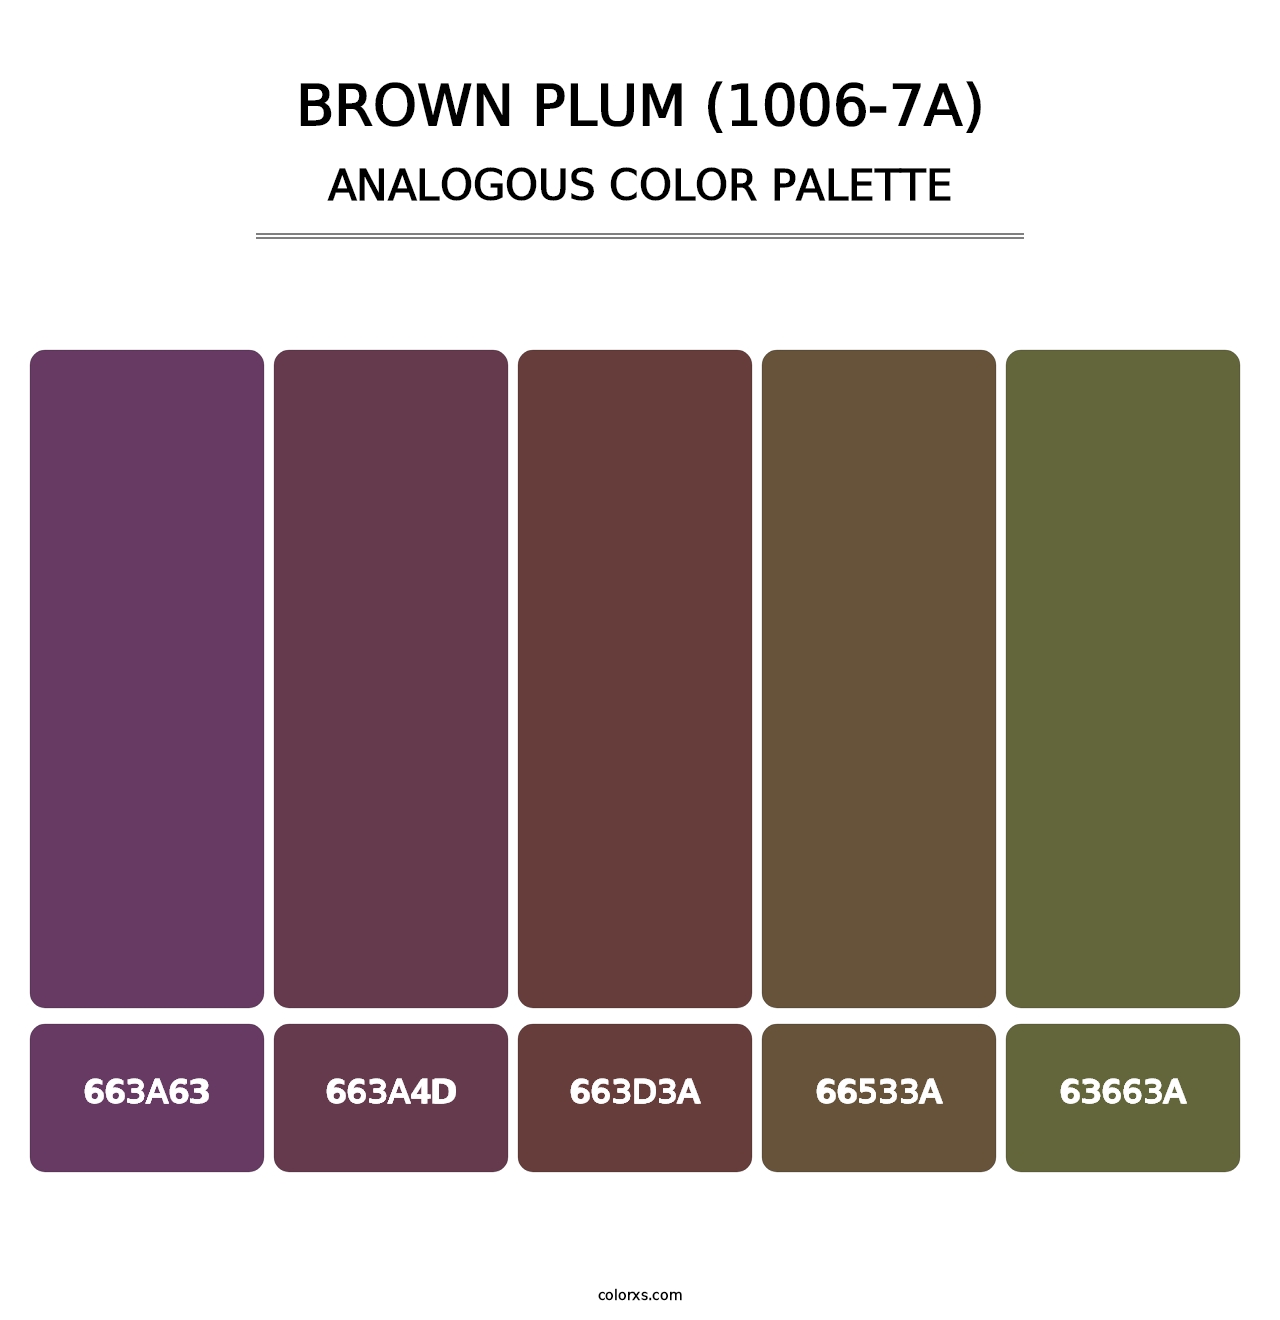 Brown Plum (1006-7A) - Analogous Color Palette